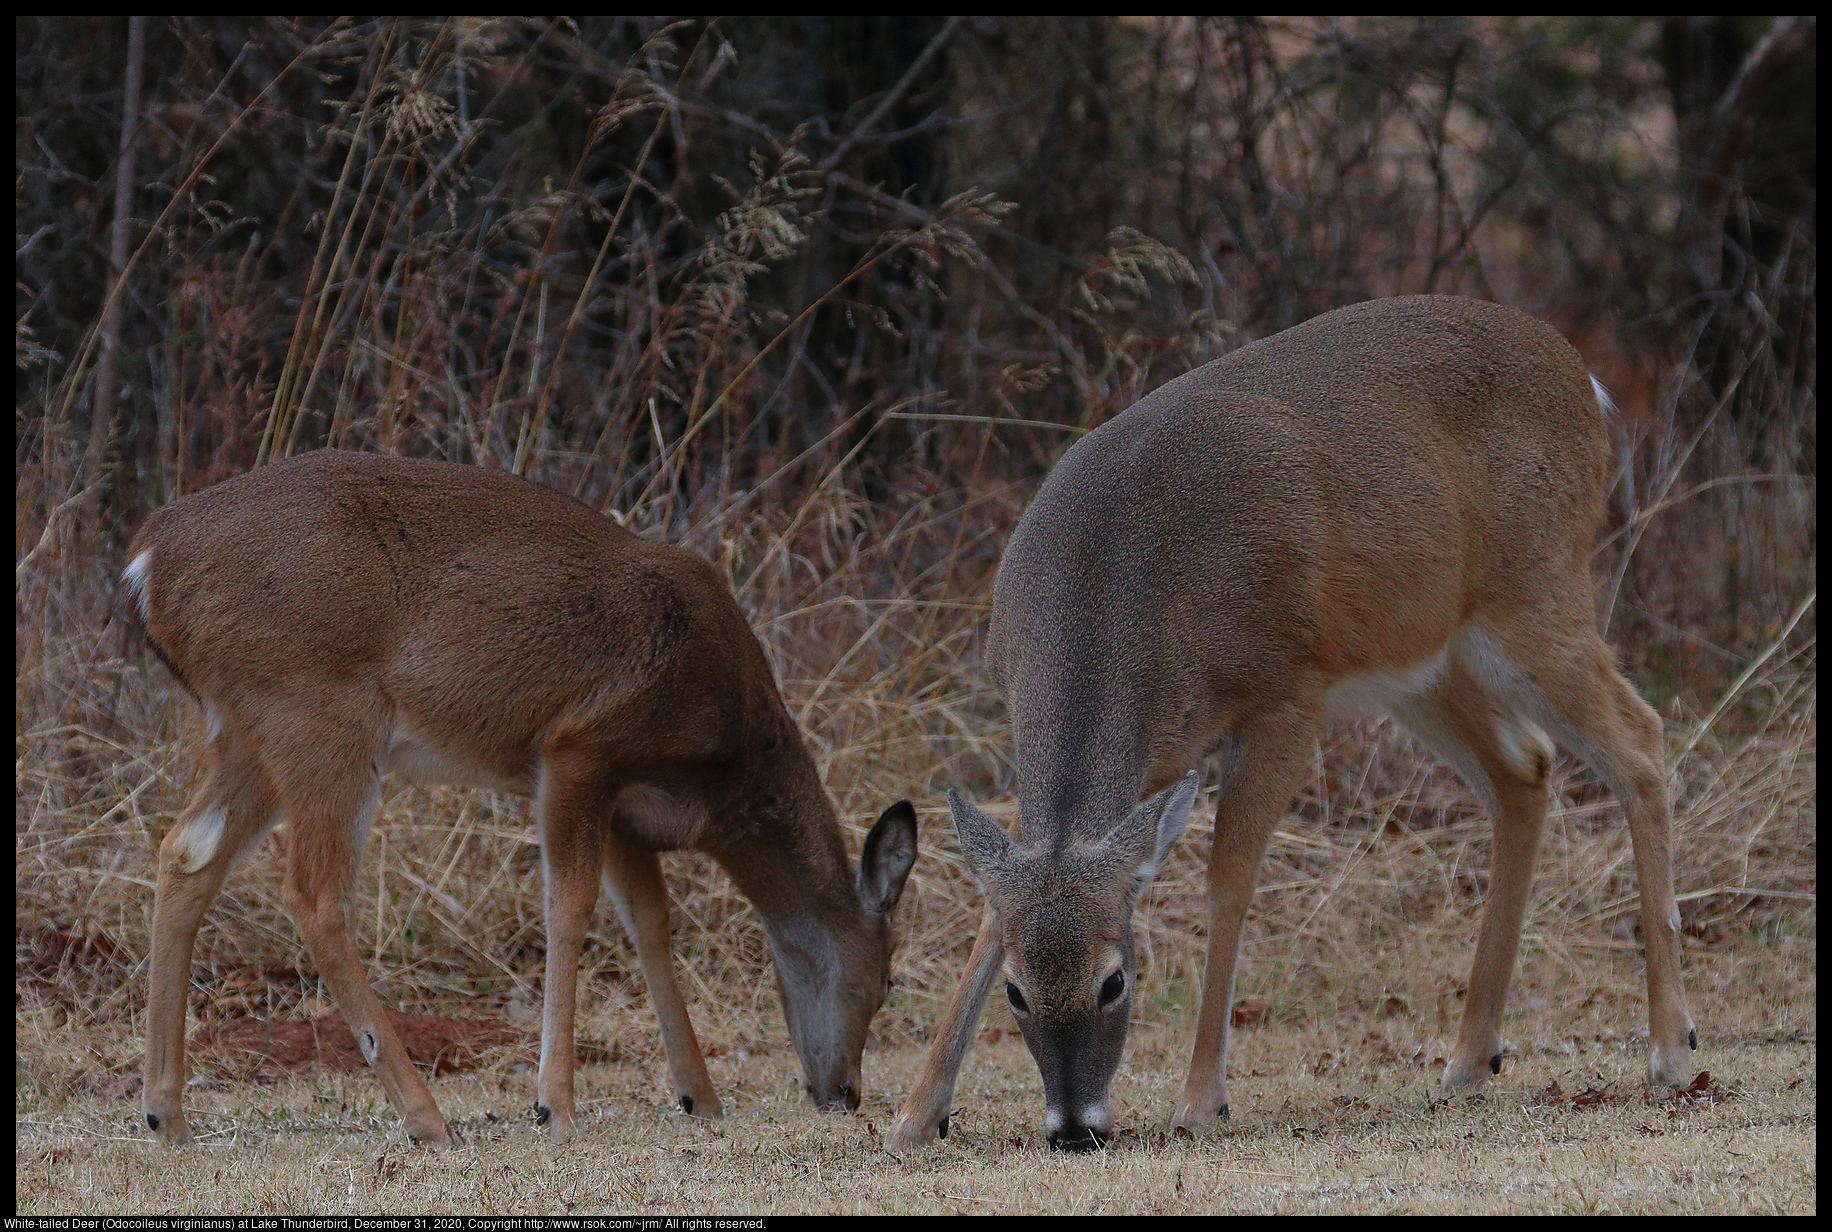 White-tailed Deer (Odocoileus virginianus) at Lake Thunderbird, December 31, 2020